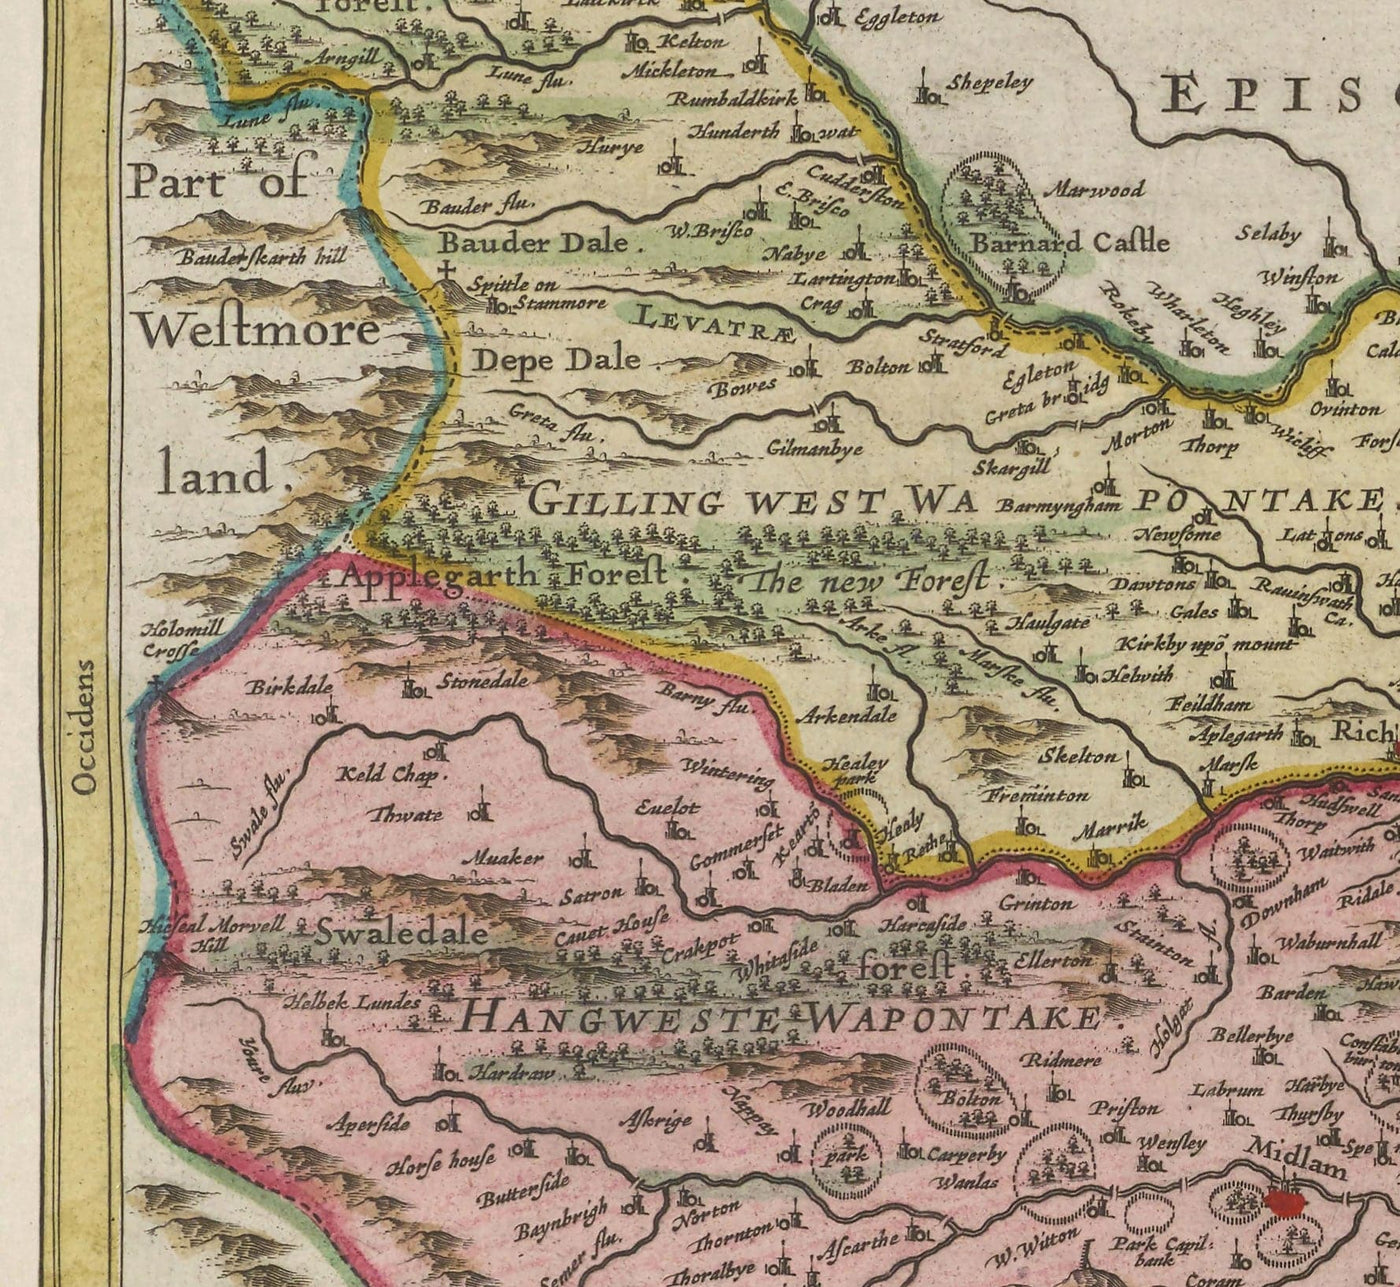 Alte Karte von North Yorkshire, 1665 von Joan Blaeu - York, Middlesbrough, Scarborough, Whitby, Malon, Pickering, Richmond